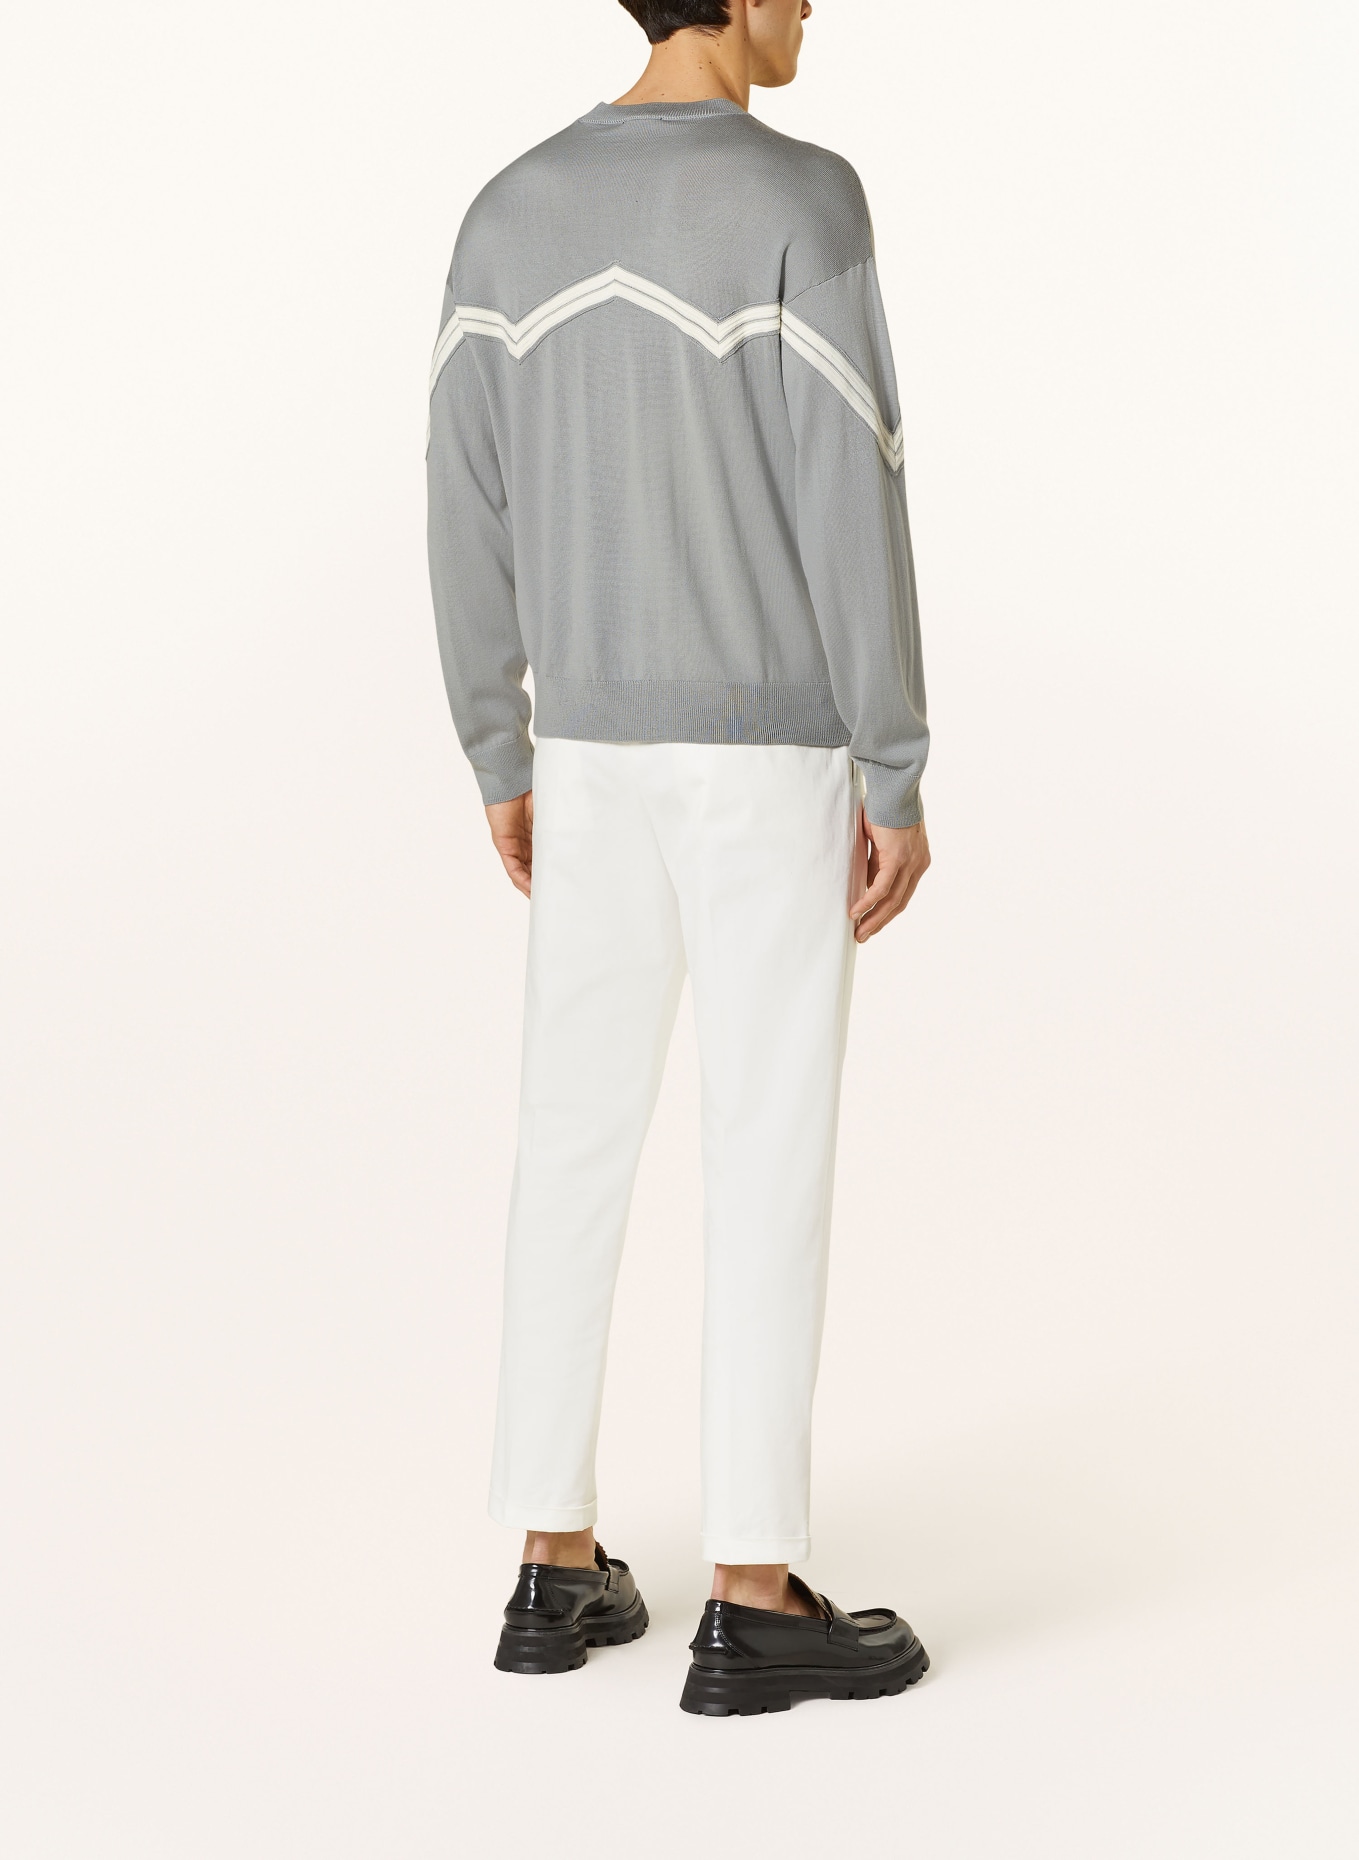 EMPORIO ARMANI Sweater, Color: GRAY/ WHITE (Image 3)